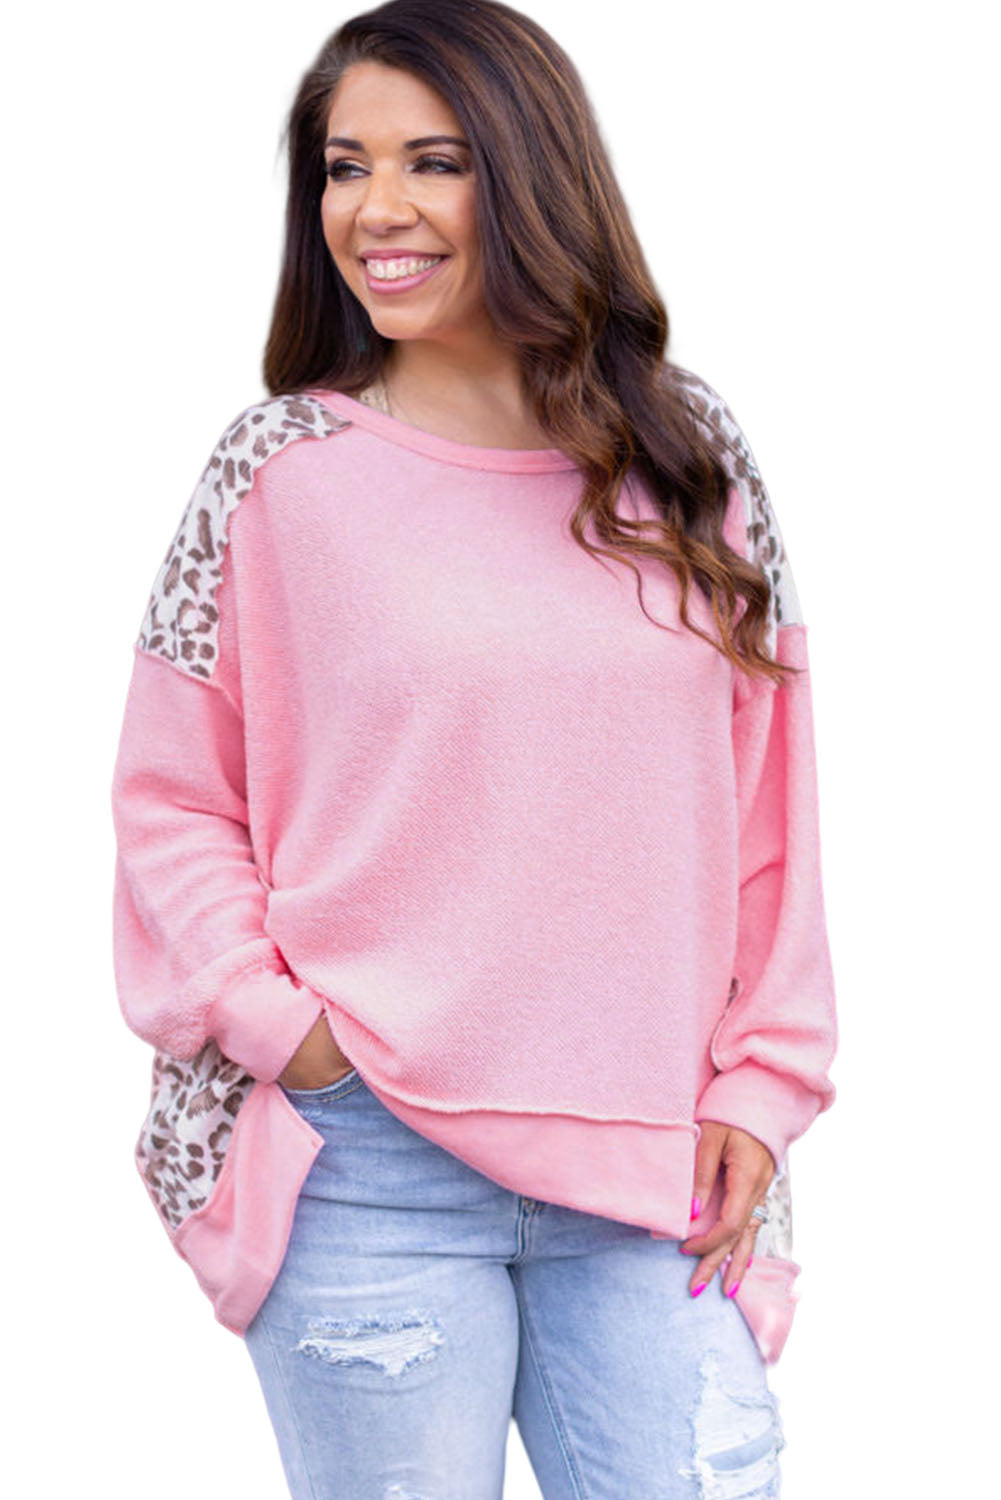 Rožnata majica velike velikosti z leopardjim spojem z izpostavljenimi šivi